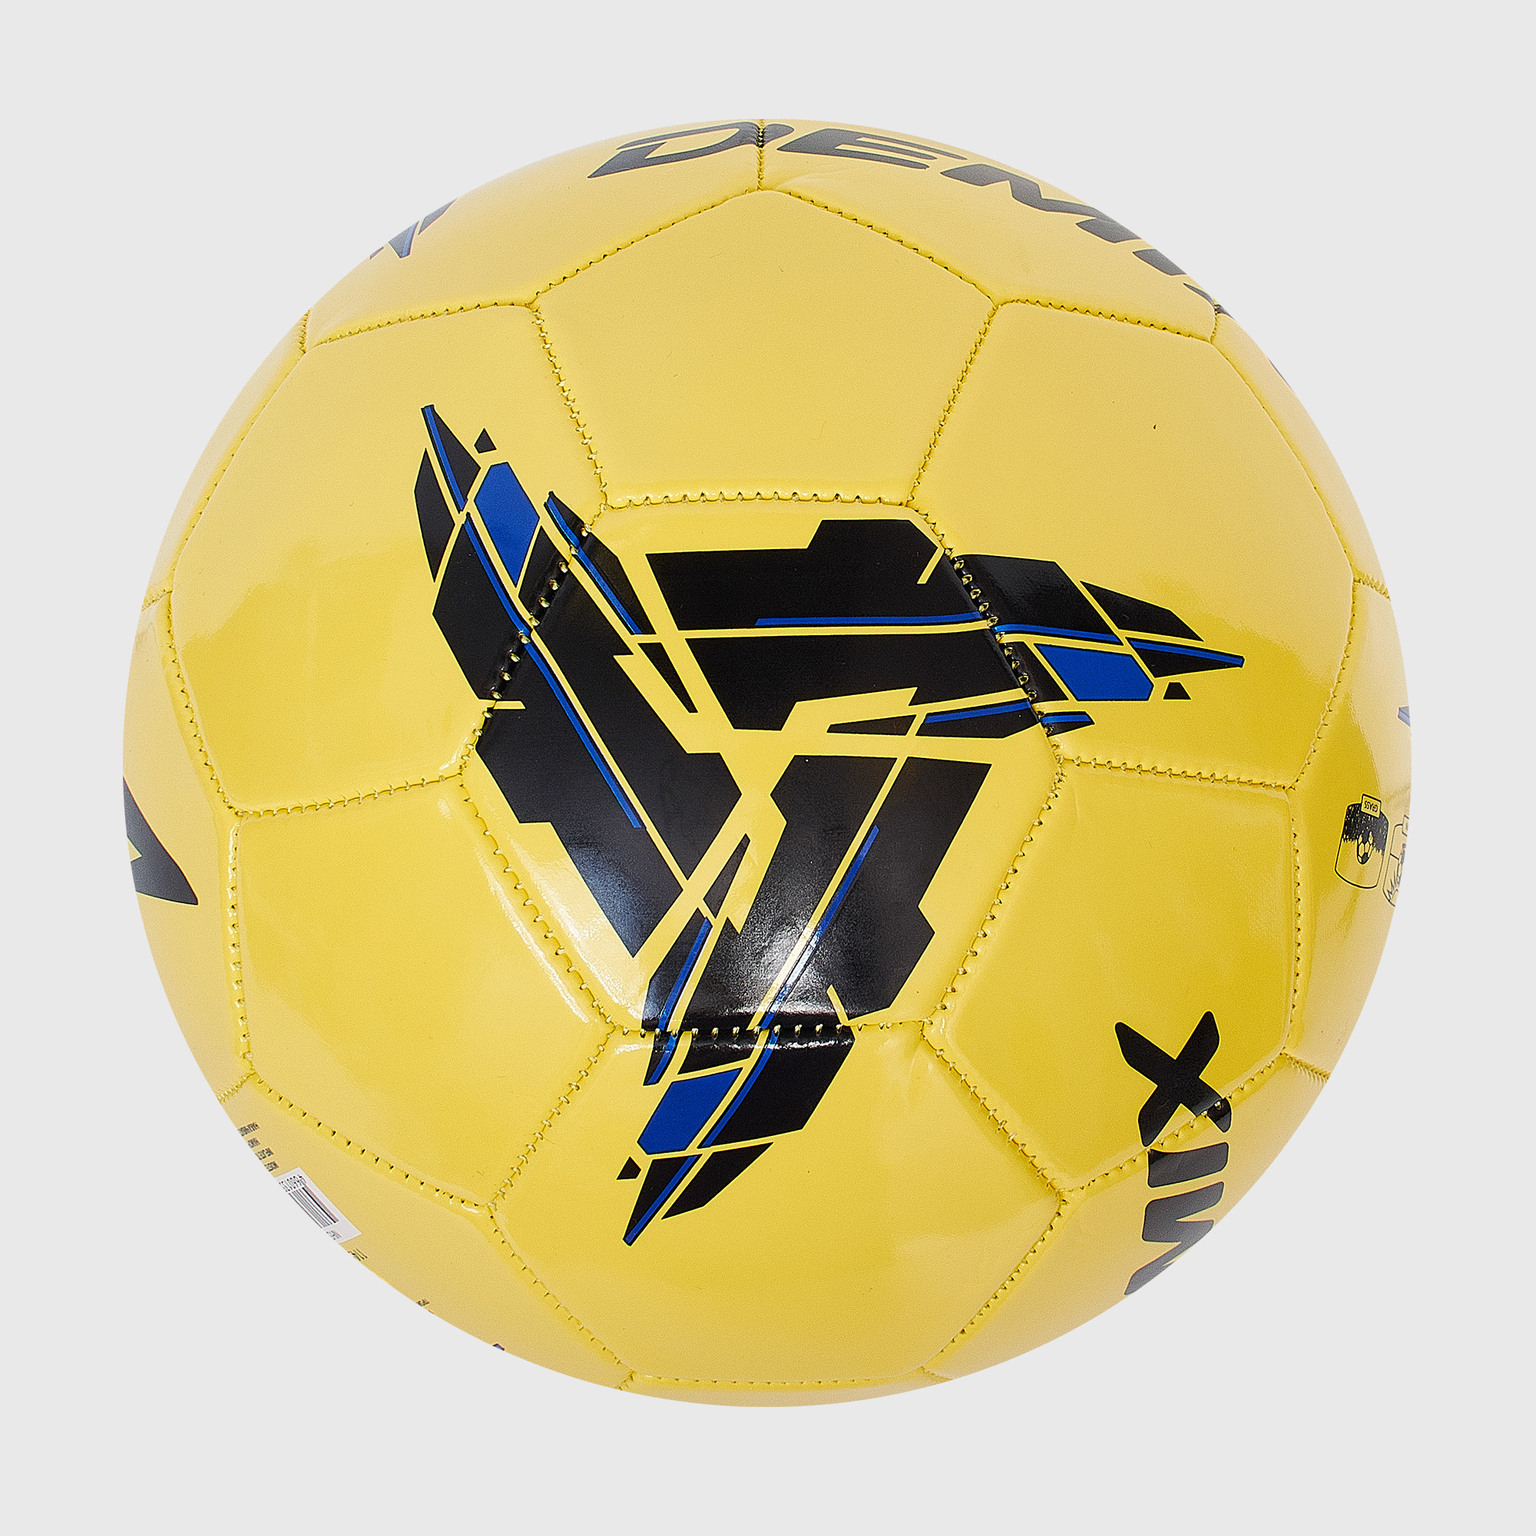 Футбольный мяч Demix 114500-MX